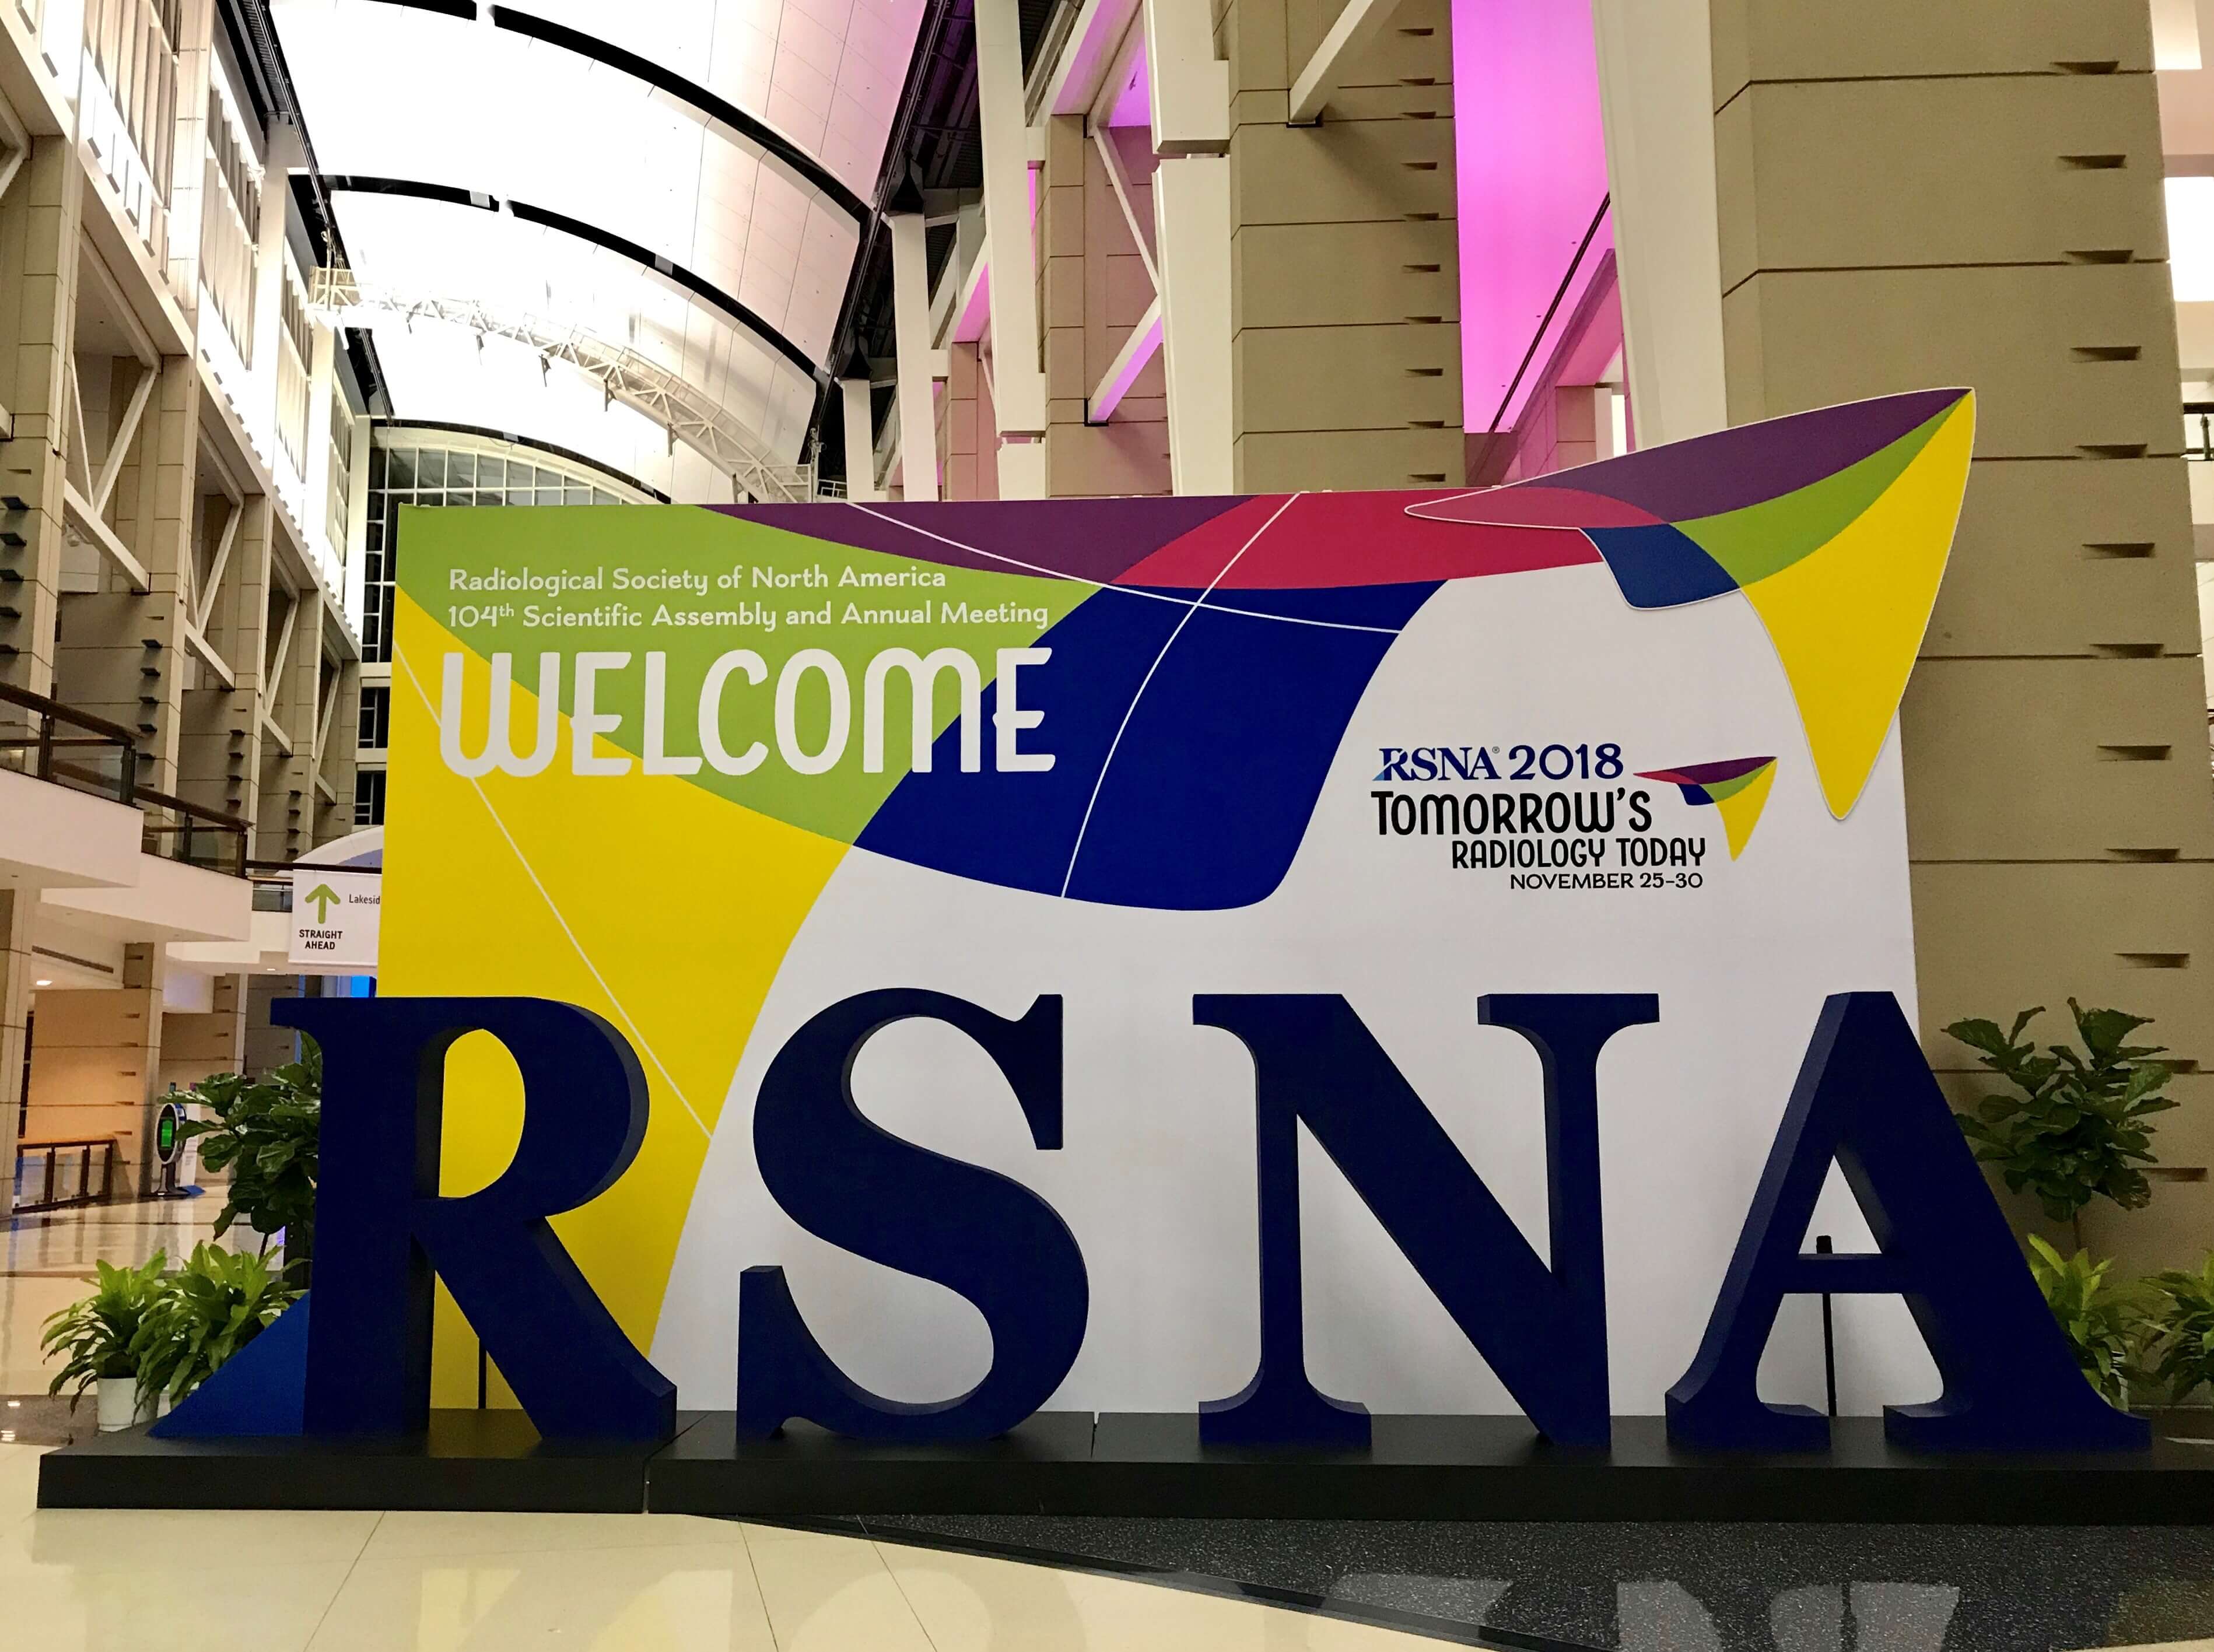 2018RSNA 北美放射学年会在北美召开